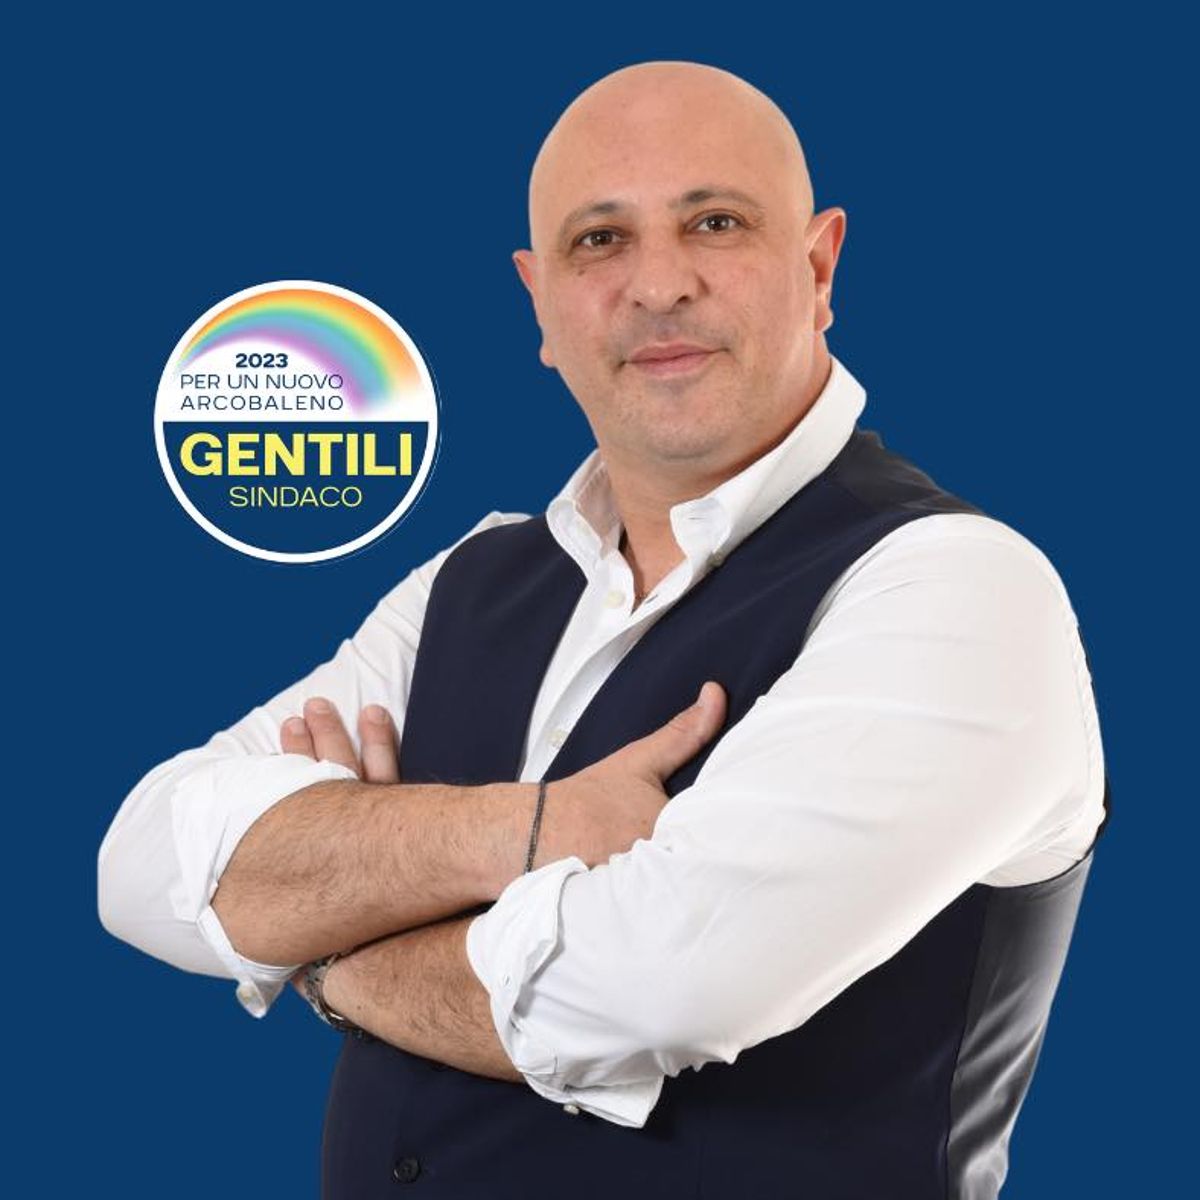 Marco Gentili candidato sindaco alle elezioni amministrative di Valmontone 2023